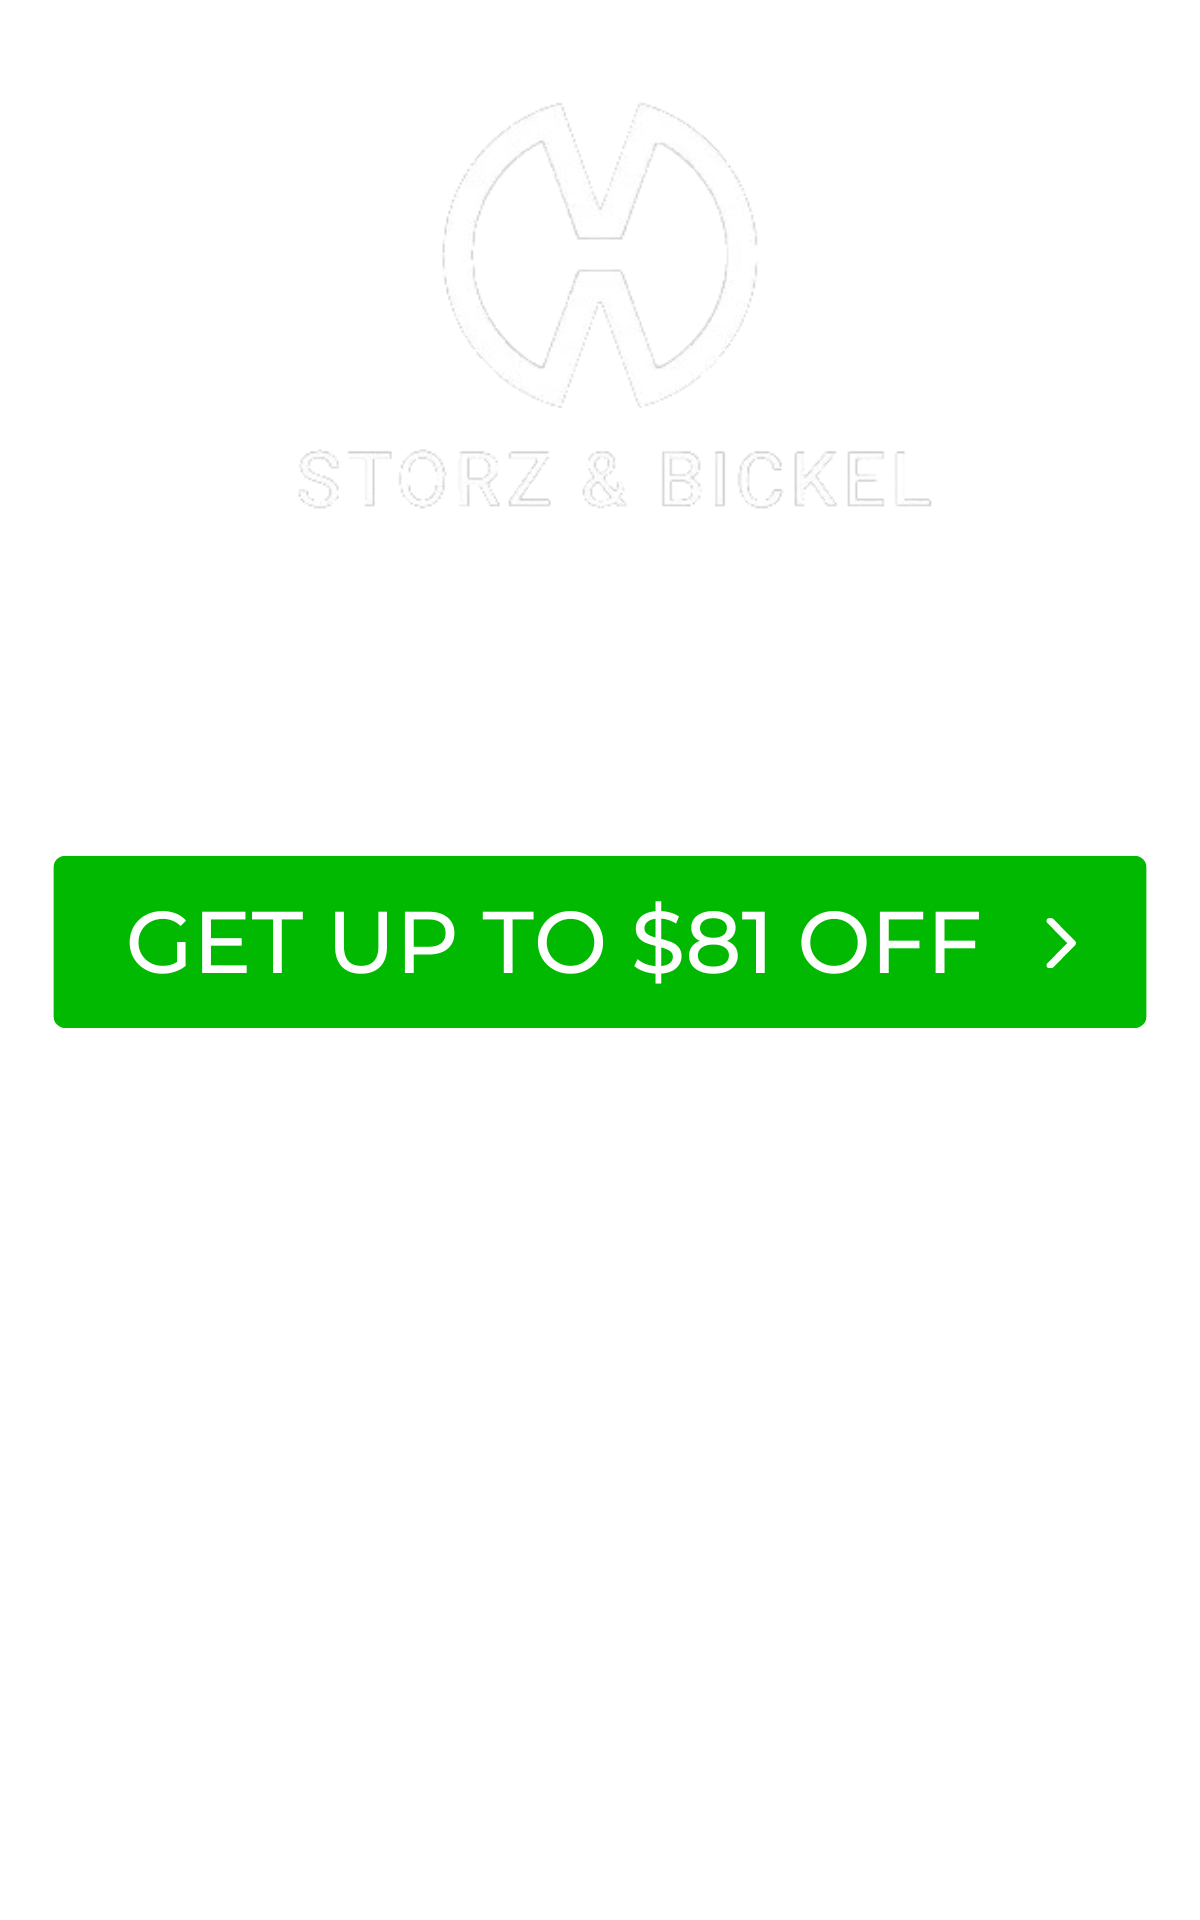 Storz & Bickel Essentials Bundles